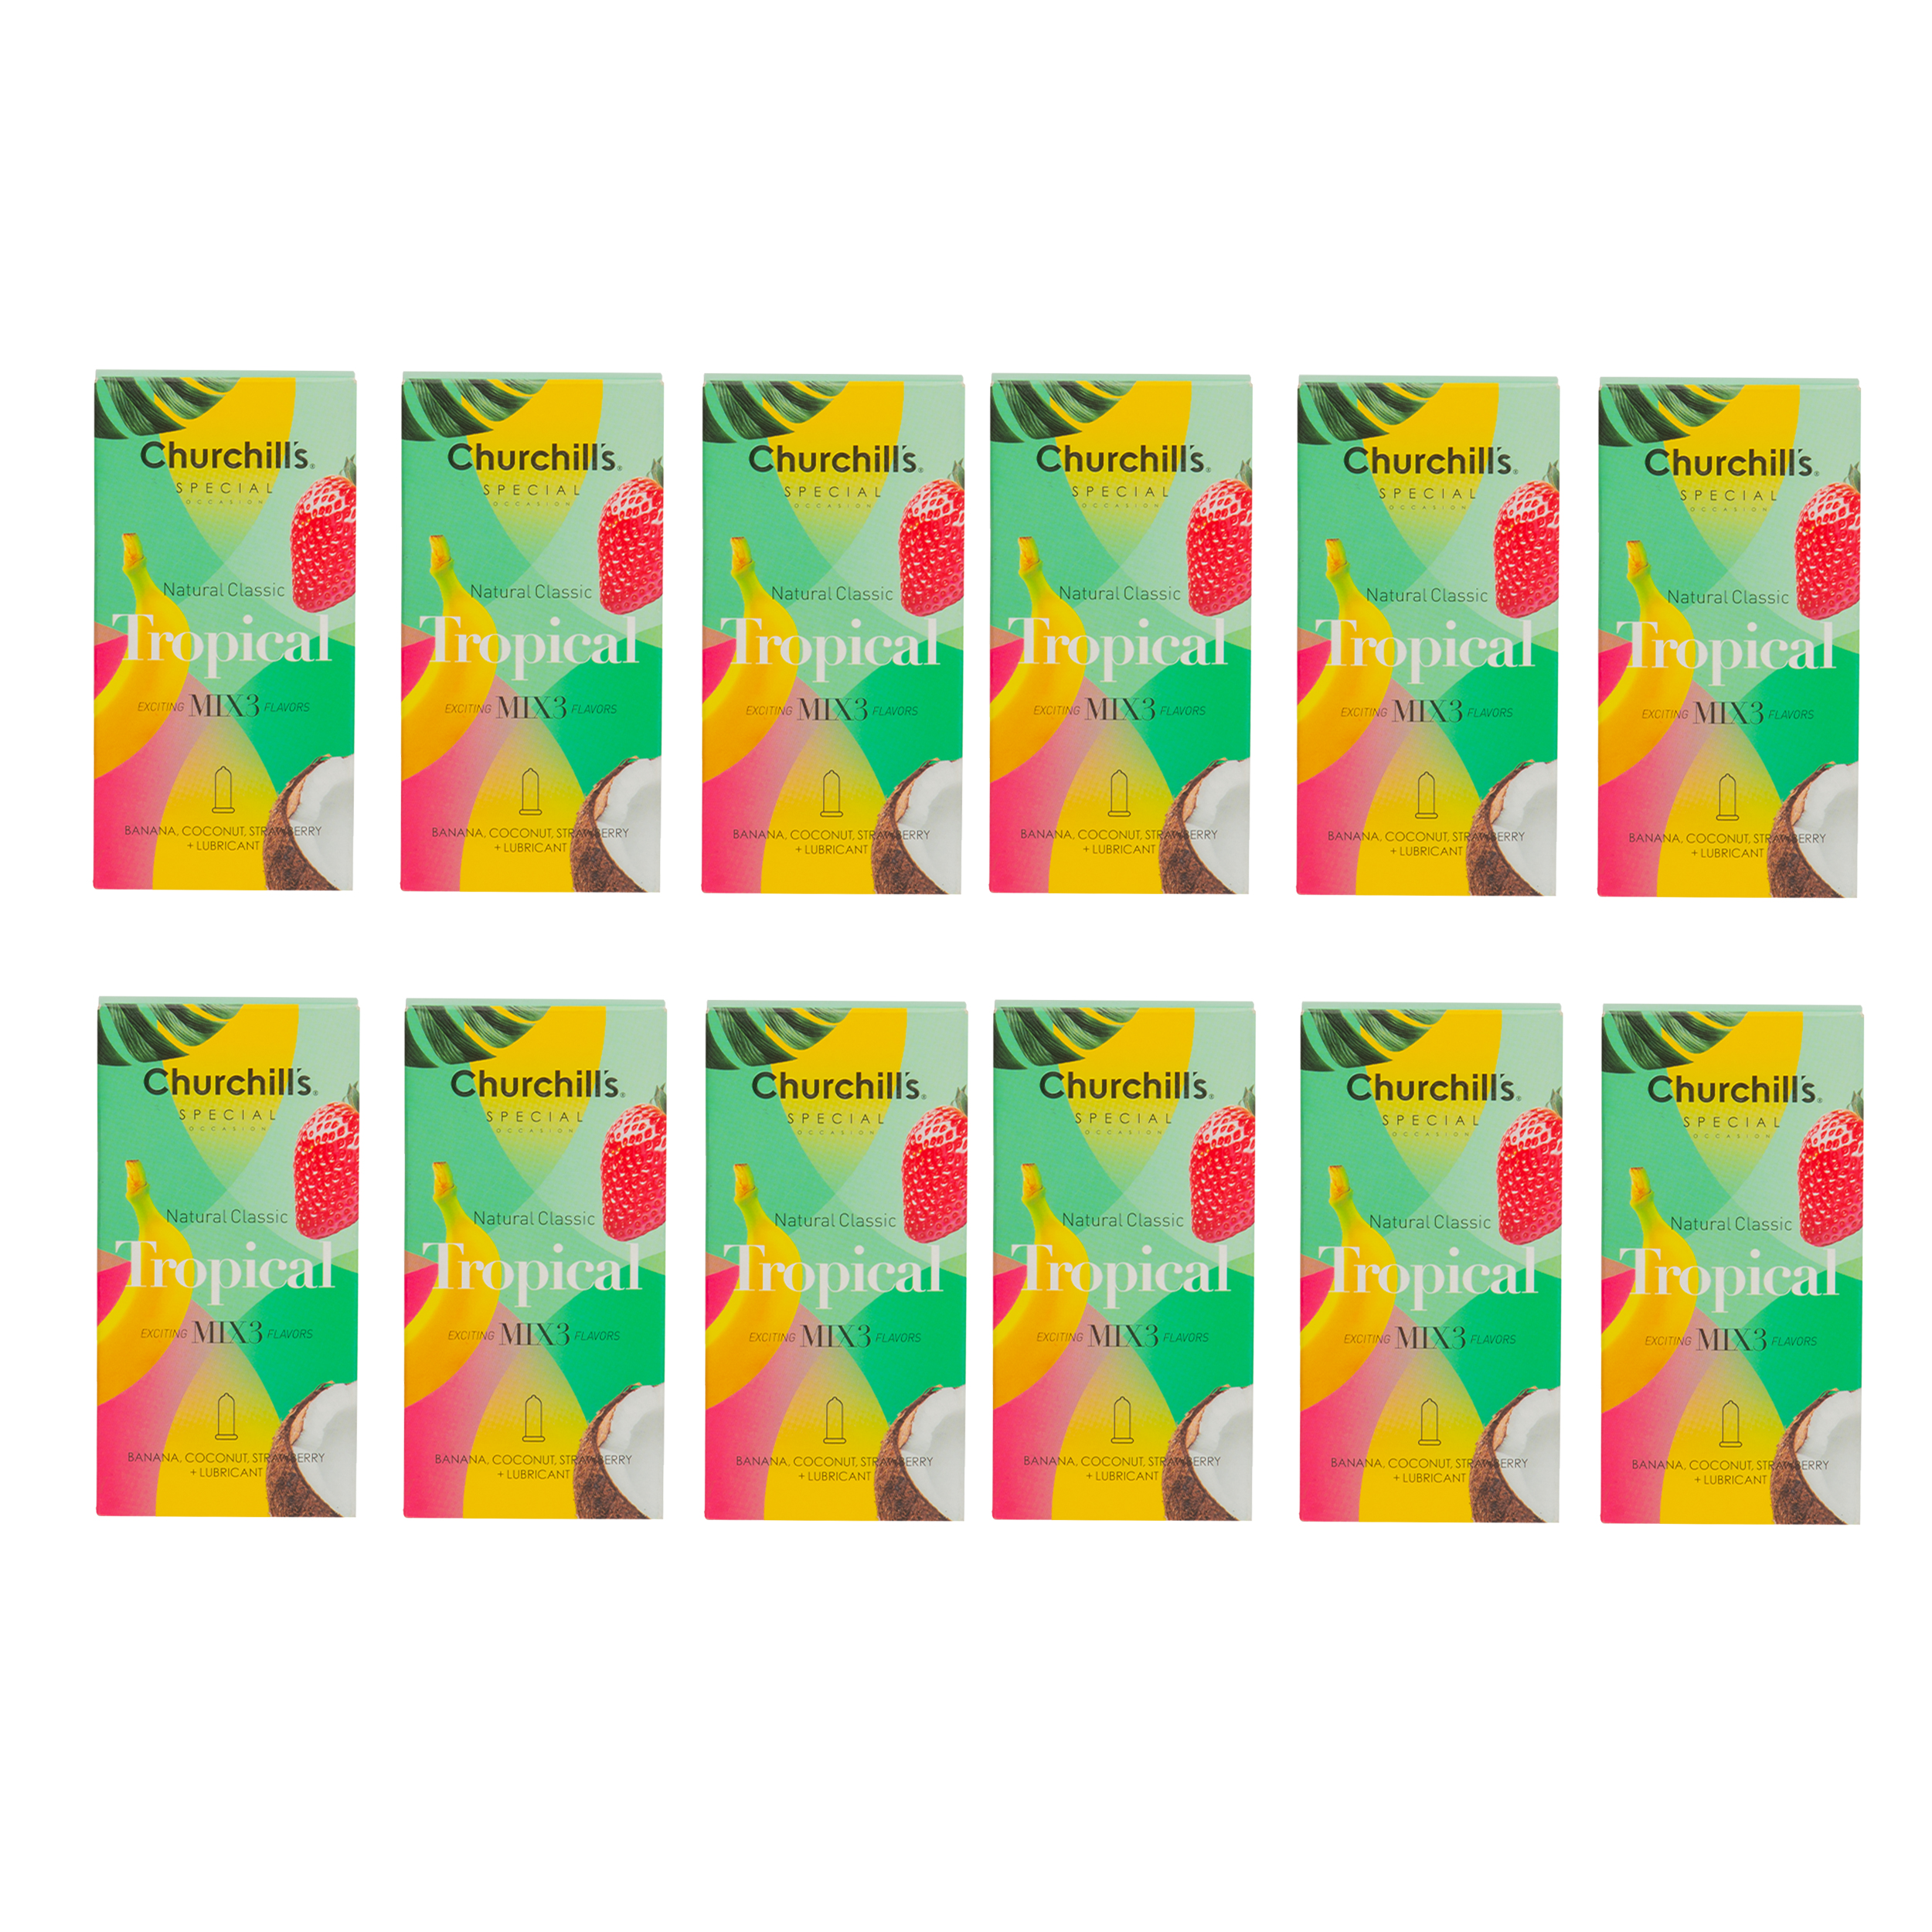 نکته خرید - قیمت روز کاندوم چرچیلز مدل Tropical مجموعه 12 عددی خرید